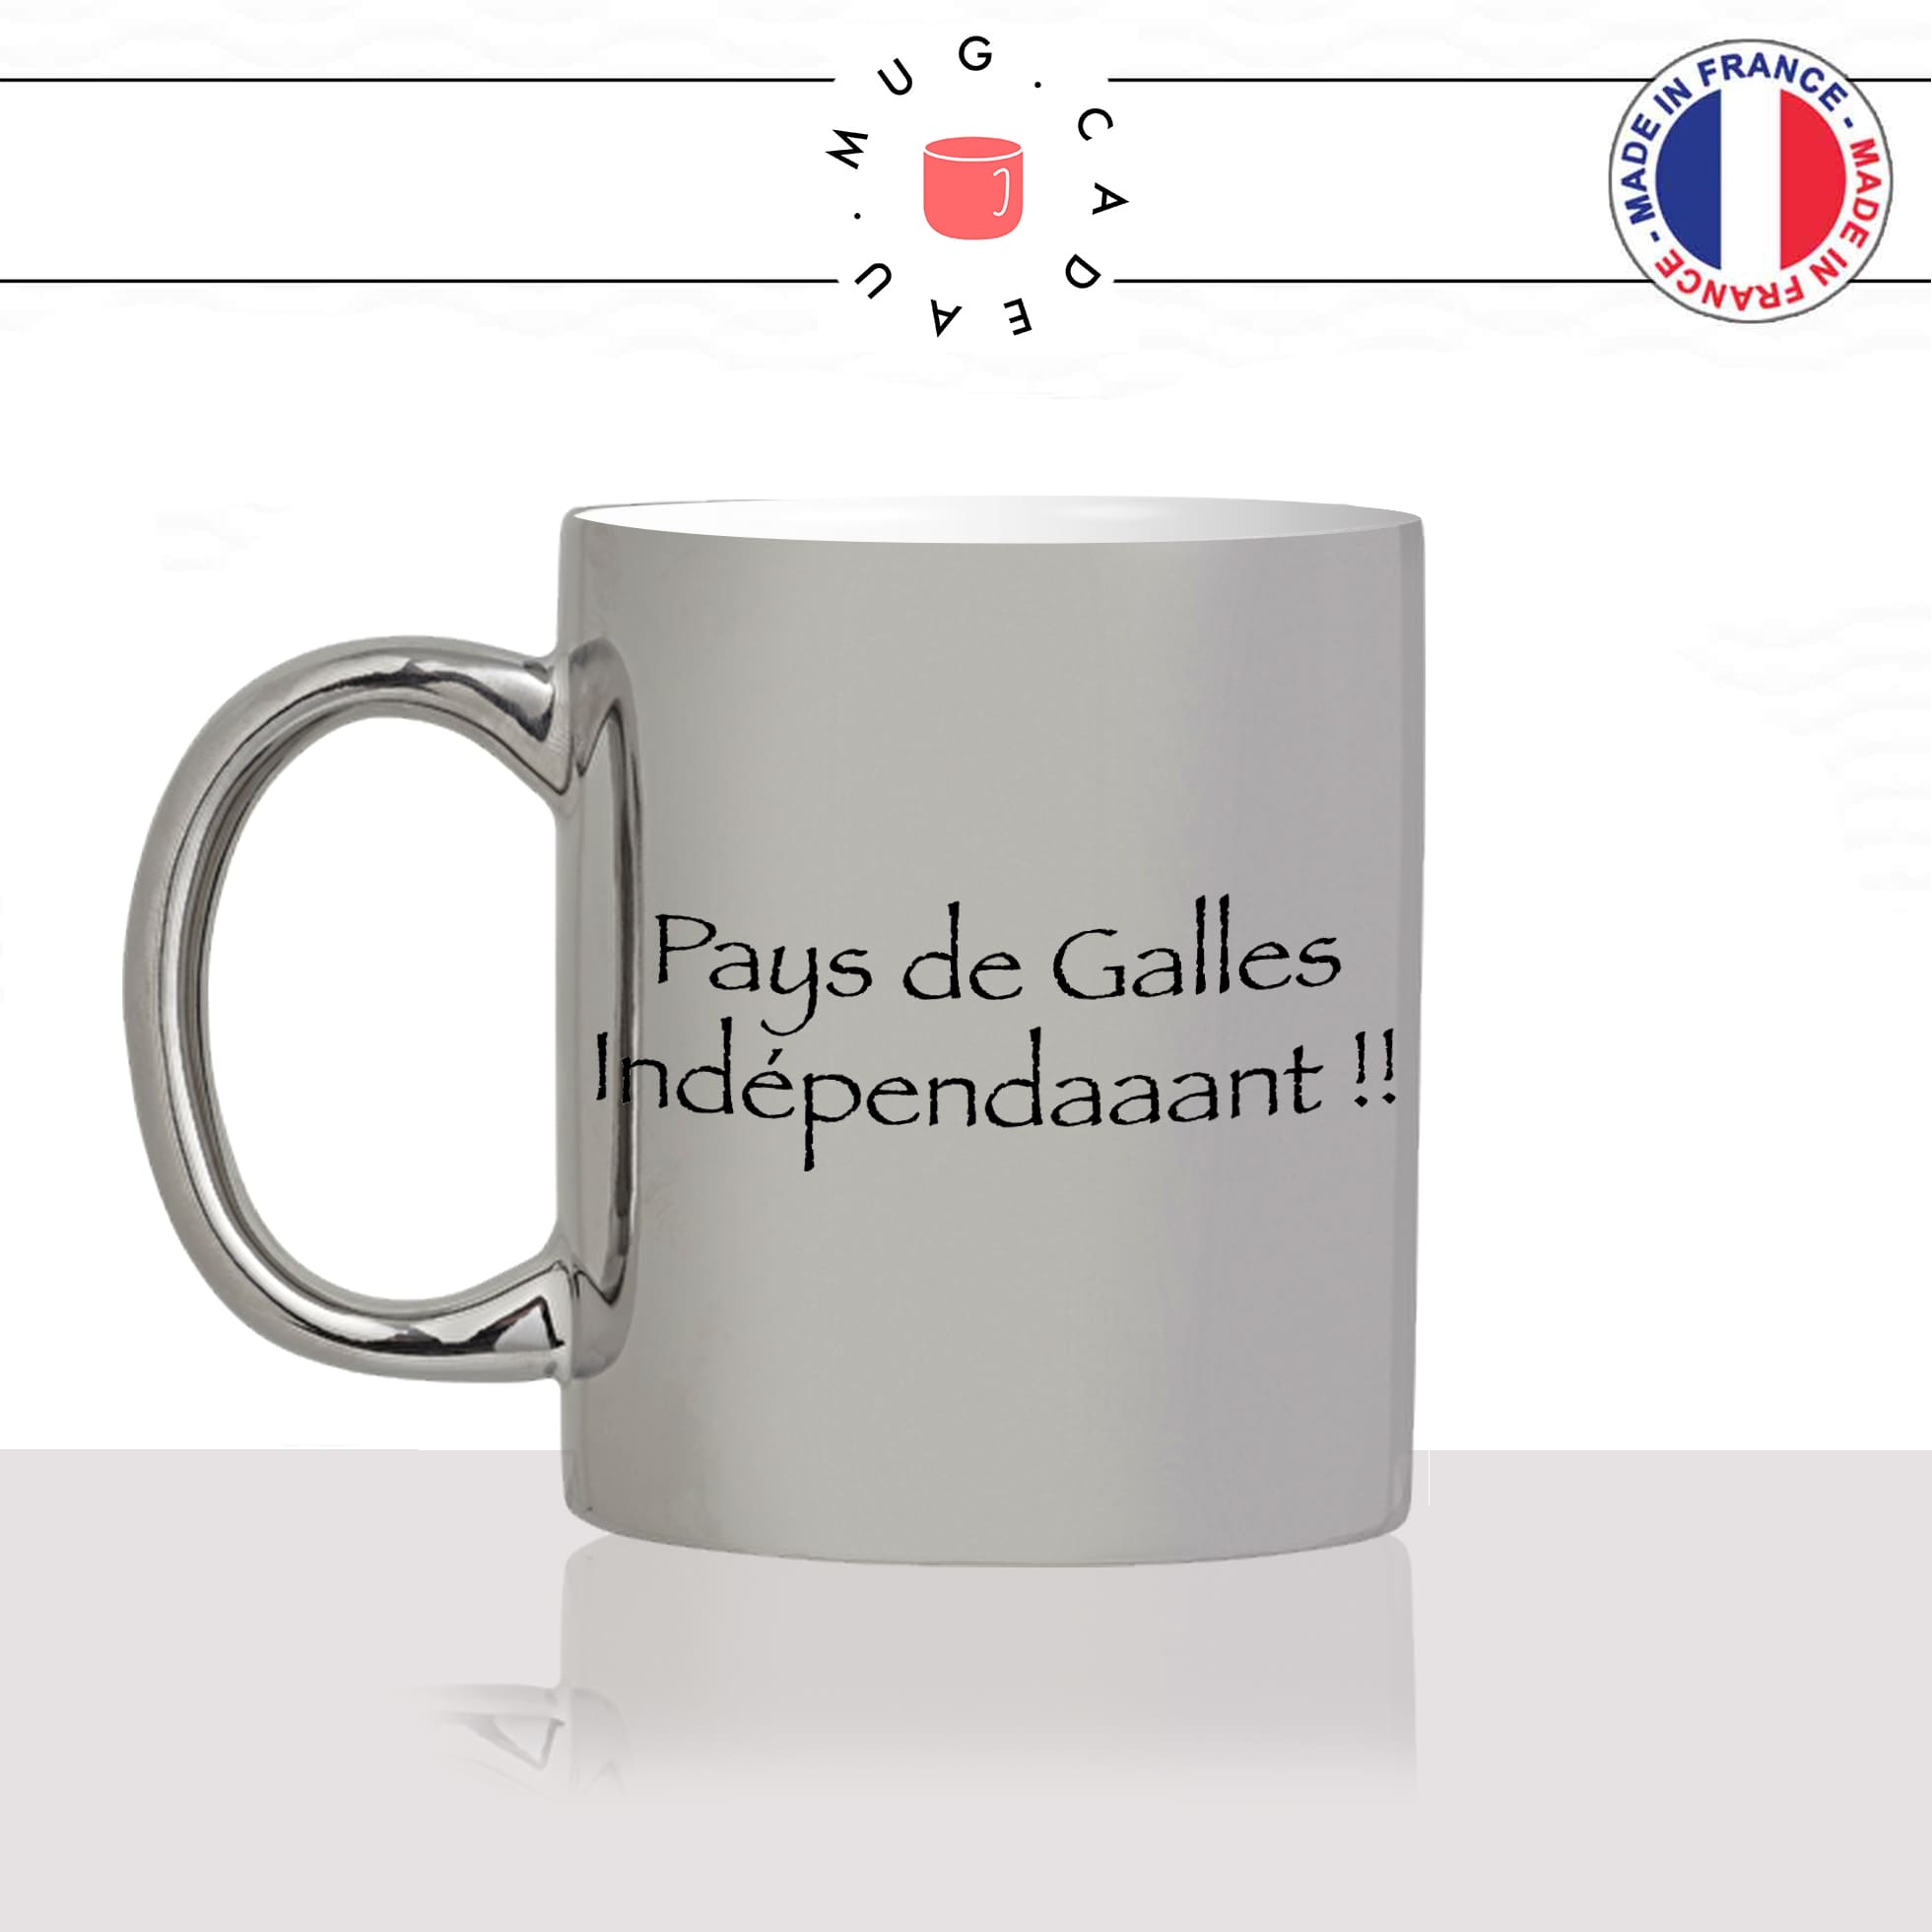 mug-tasse-argent-argenté-silver-série-francaise-culte-kaamelott-arthur-pays-de-galles-independant-perceval-idée-cadeau-fun-cool-café-thé